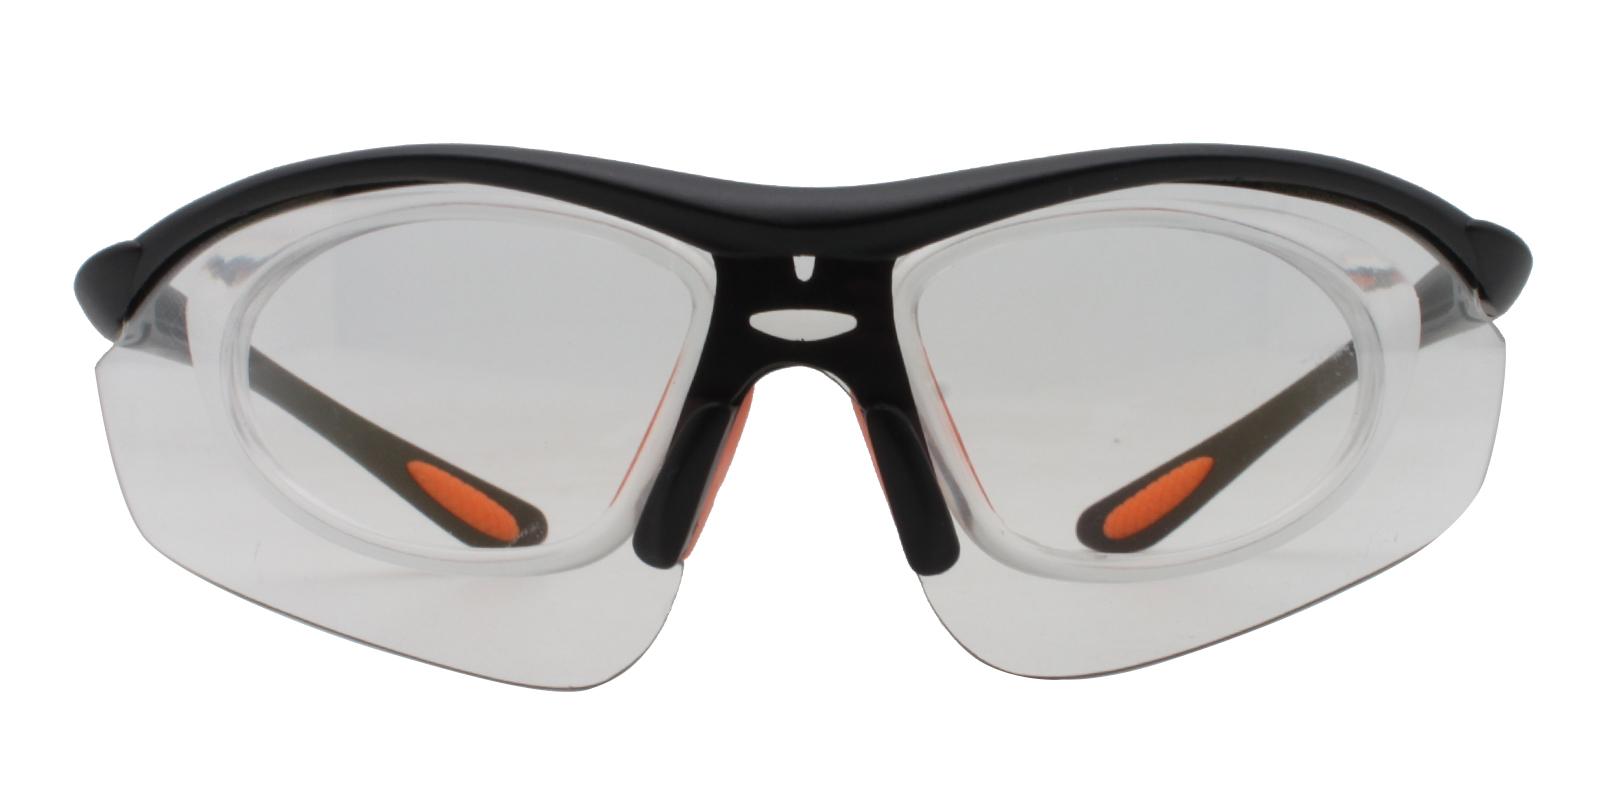 Gustavus Translucent Plastic NosePads , SportsGlasses Frames from ABBE Glasses